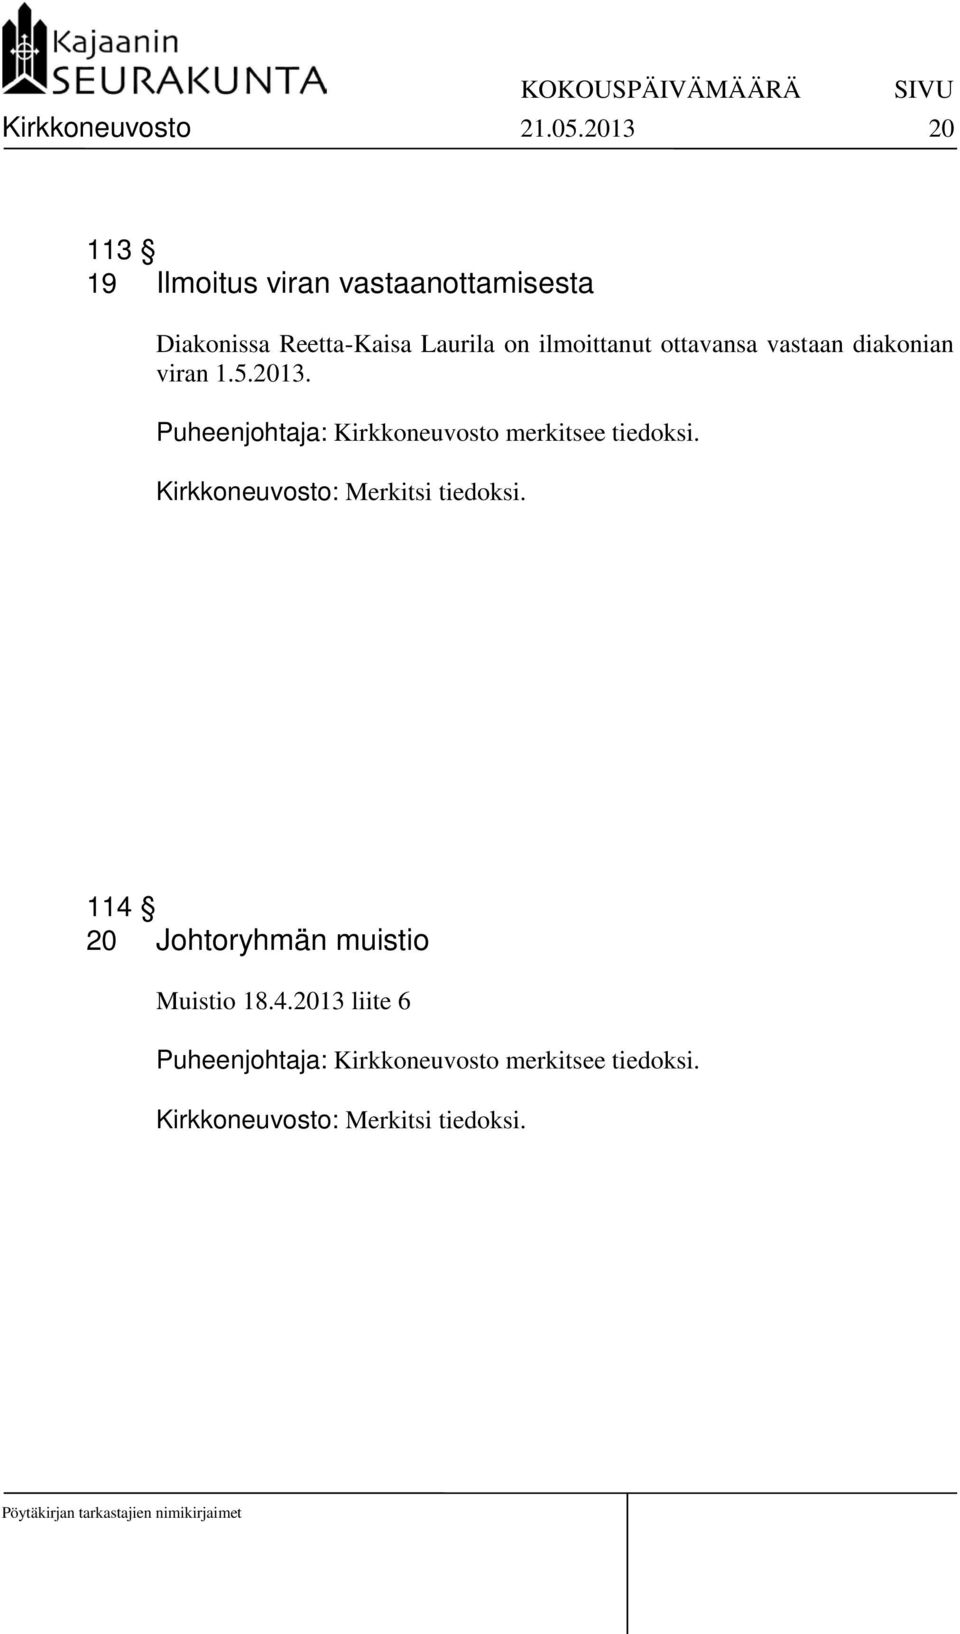 ottavansa vastaan diakonian viran 1.5.2013. Puheenjohtaja: Kirkkoneuvosto merkitsee tiedoksi.